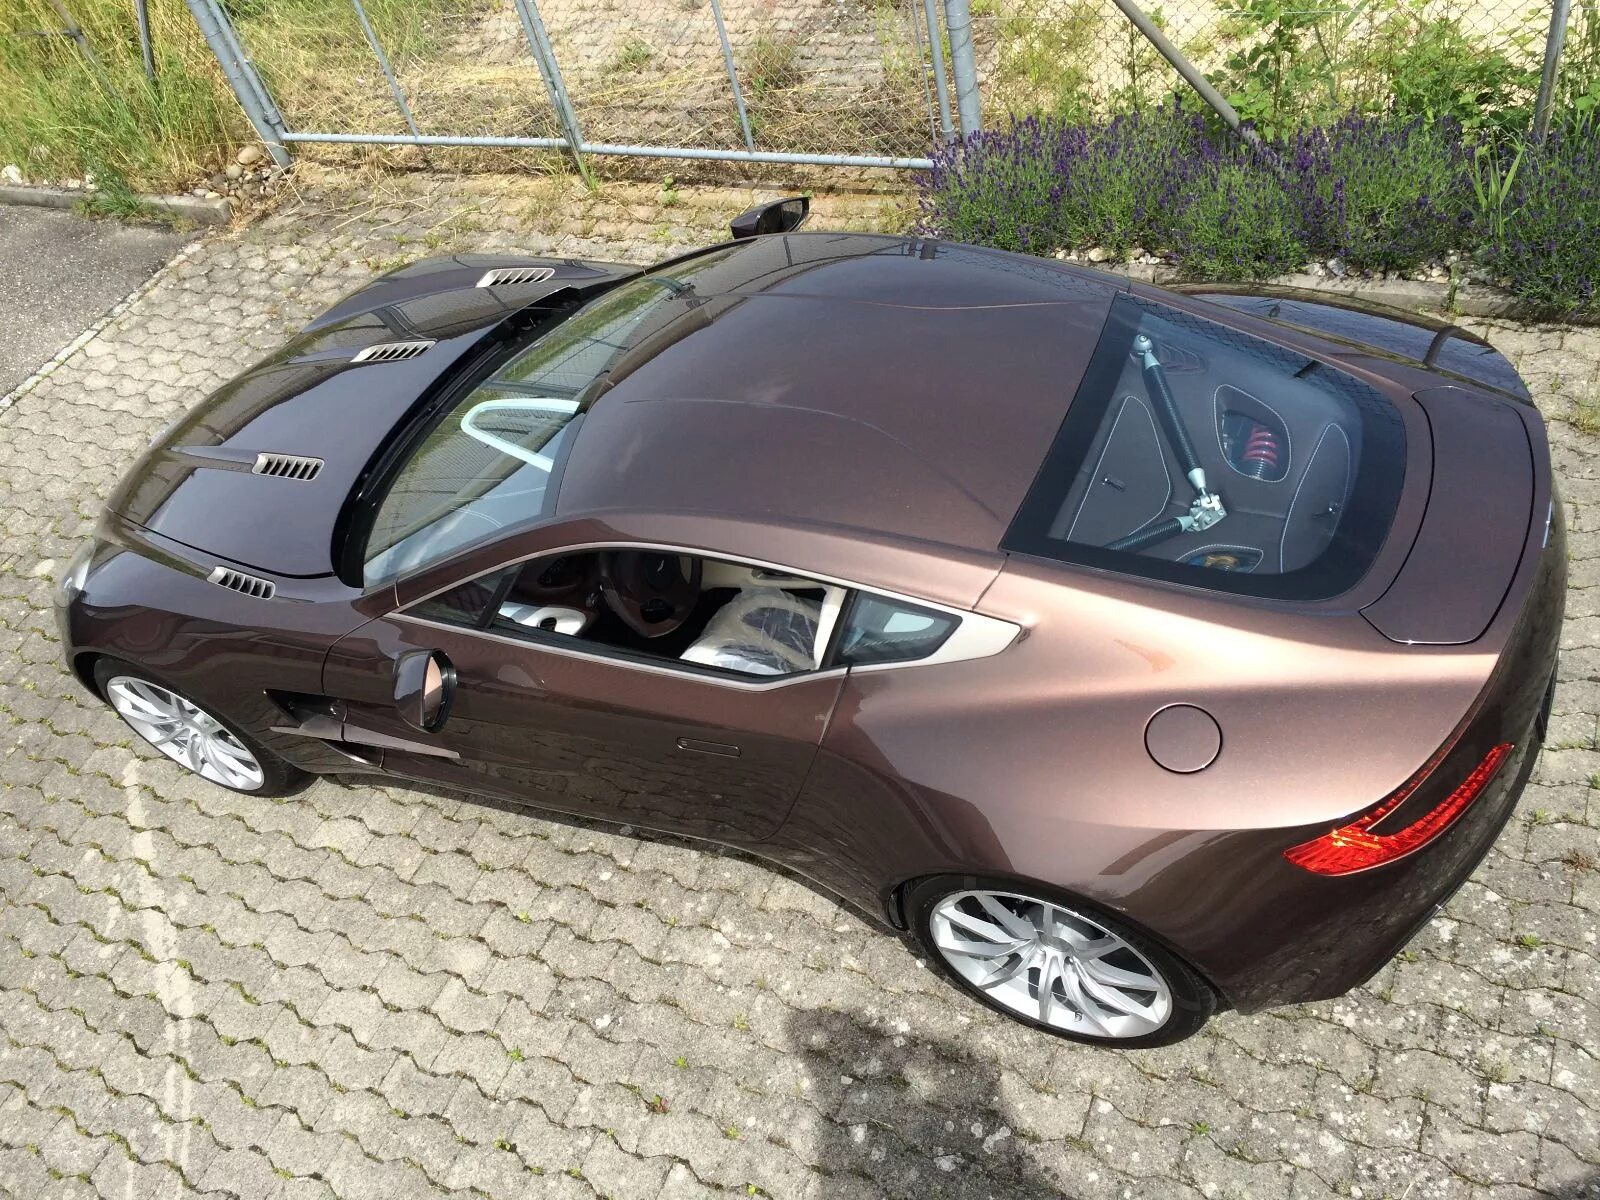 Автомобиль 1 млн руб. Aston Martin one-77. Красивые машины недорогие. Интересные авто. Недорогая качественная машина.